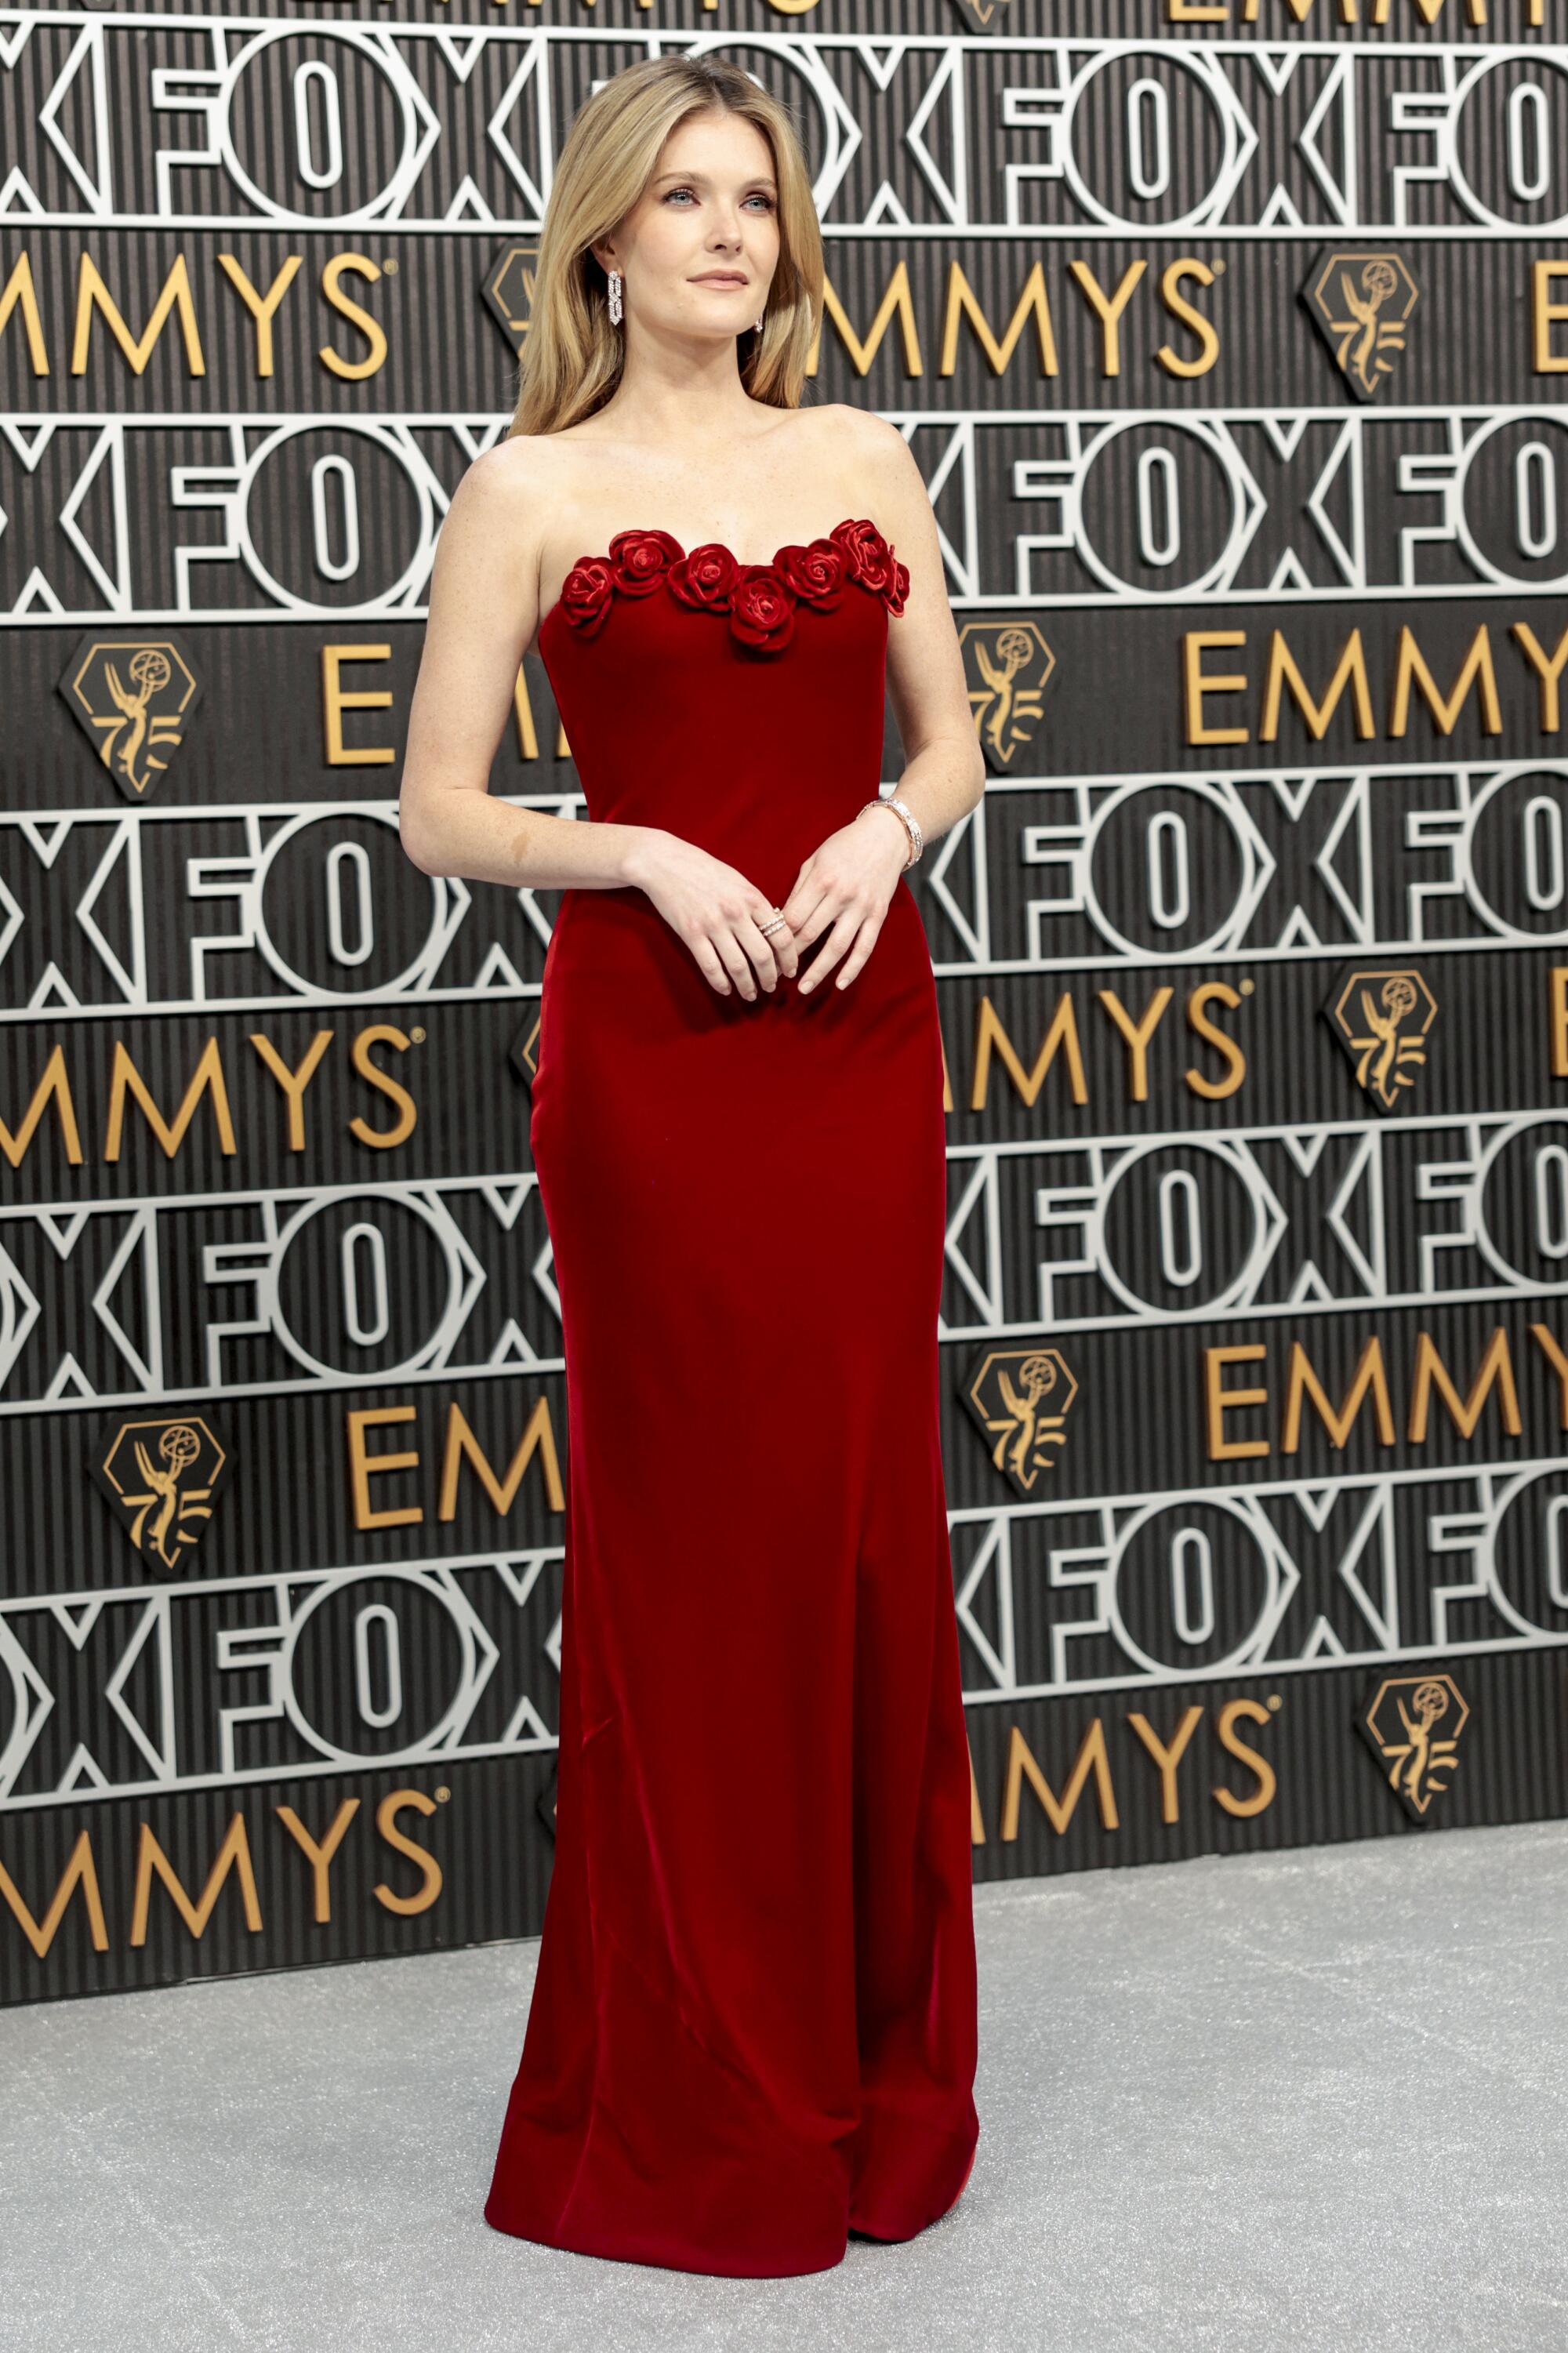 Emmys red carpet: Best dressed at 2023 Emmy Awards - Cirrkus News